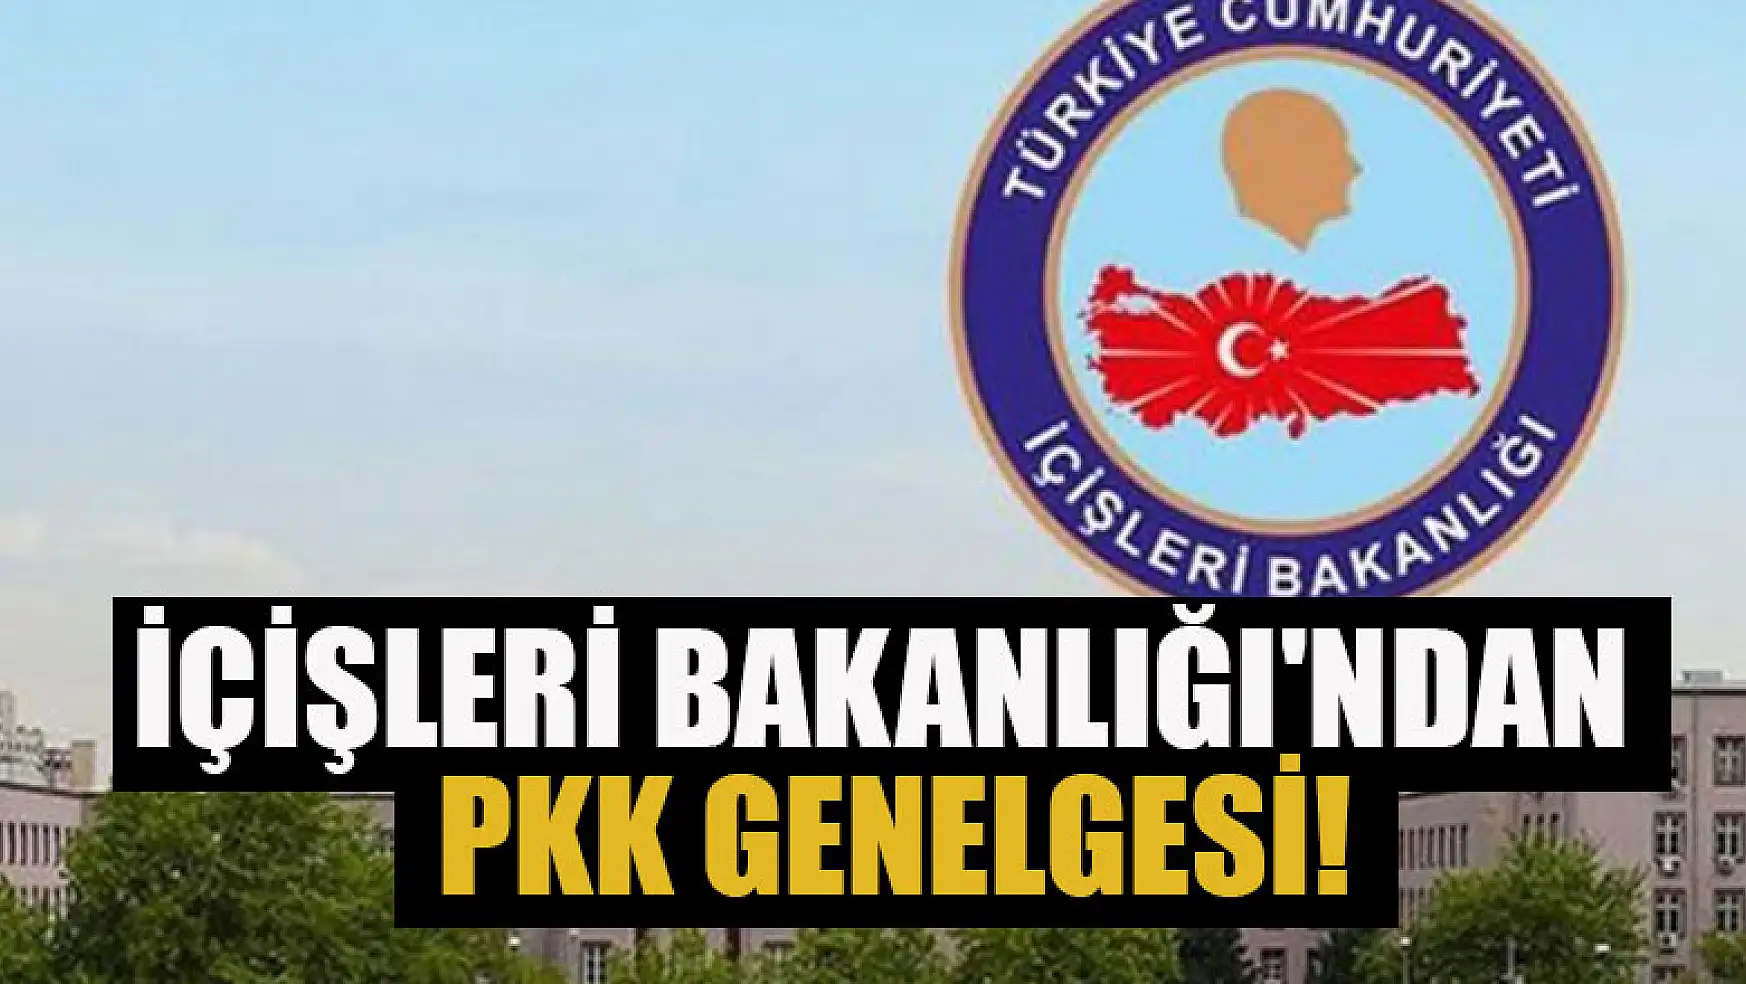 İçişleri Bakanlığı'ndan PKK genelgesi!